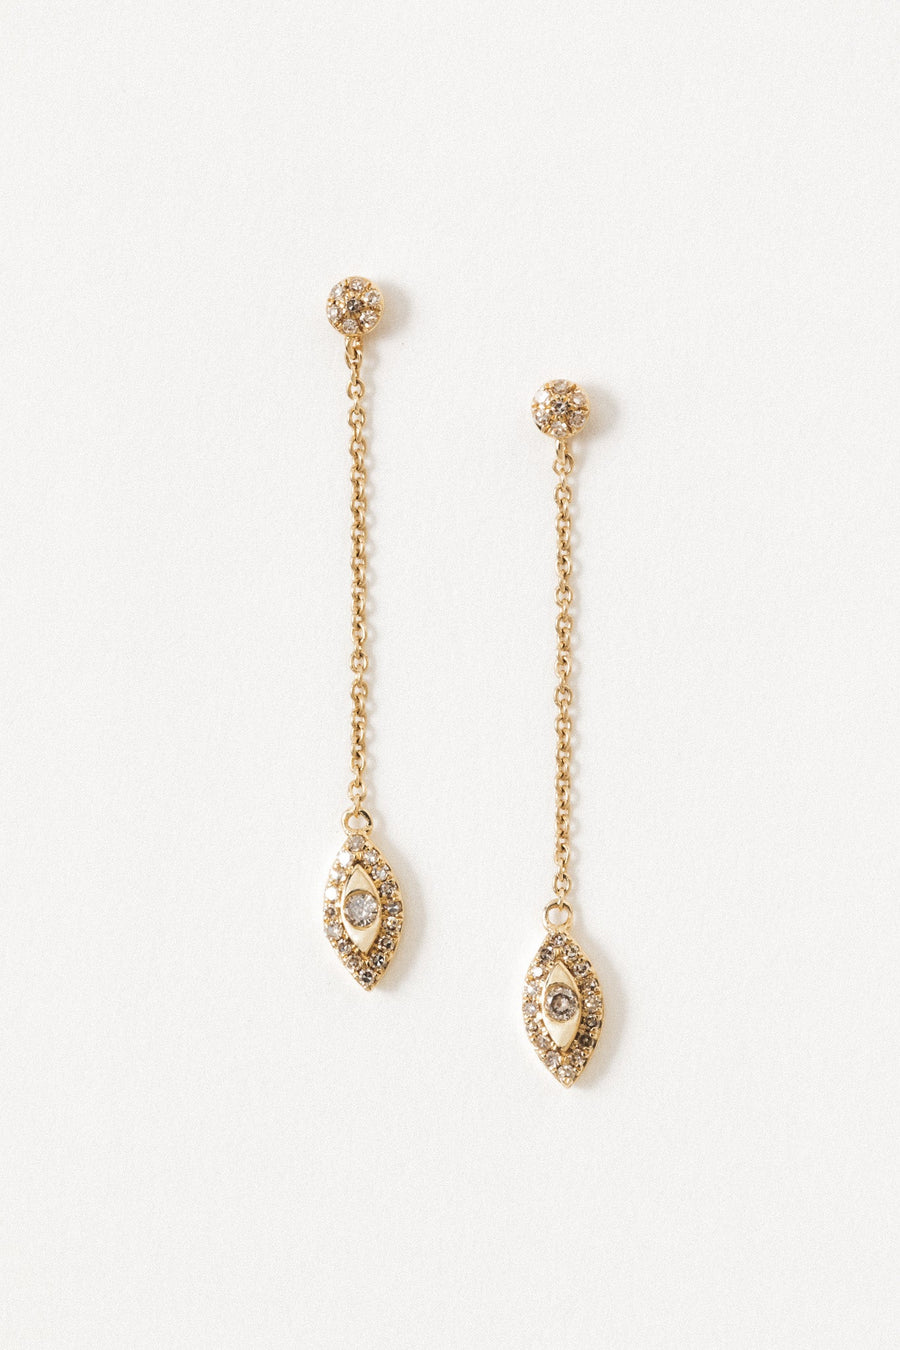 Tresor Jewelry Gold / Diamond 14kt Diamond Eyes Earrings